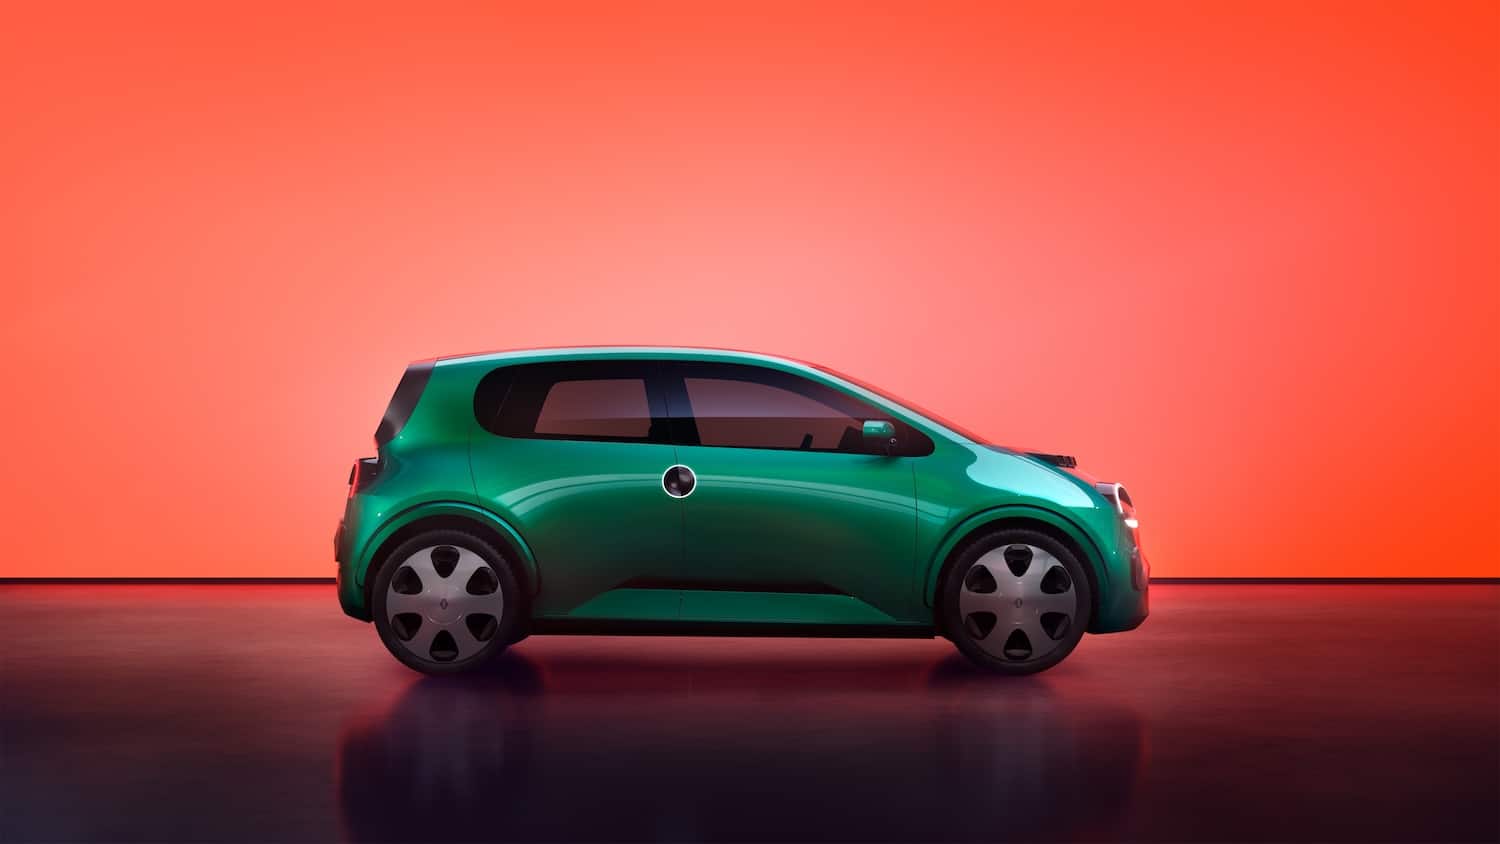 Renault appelle à l'union Européenne face à la féroce concurrence des voitures électriques Chinoises